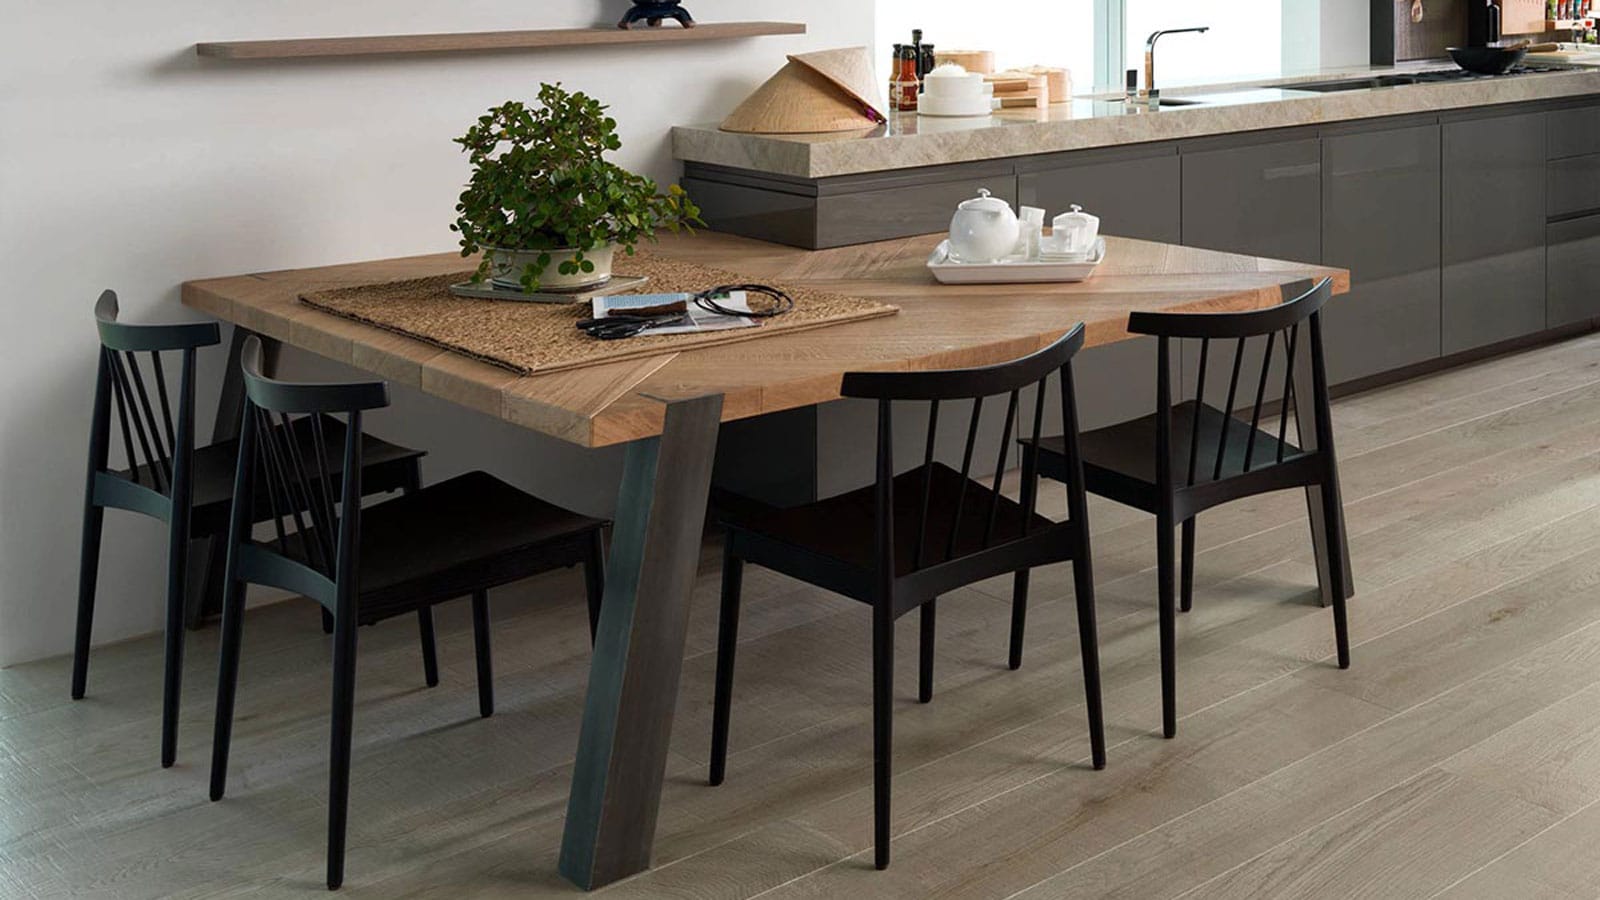 Banquetas, bancos y sillas de cocina: diseño y estilo - Moove Magazine